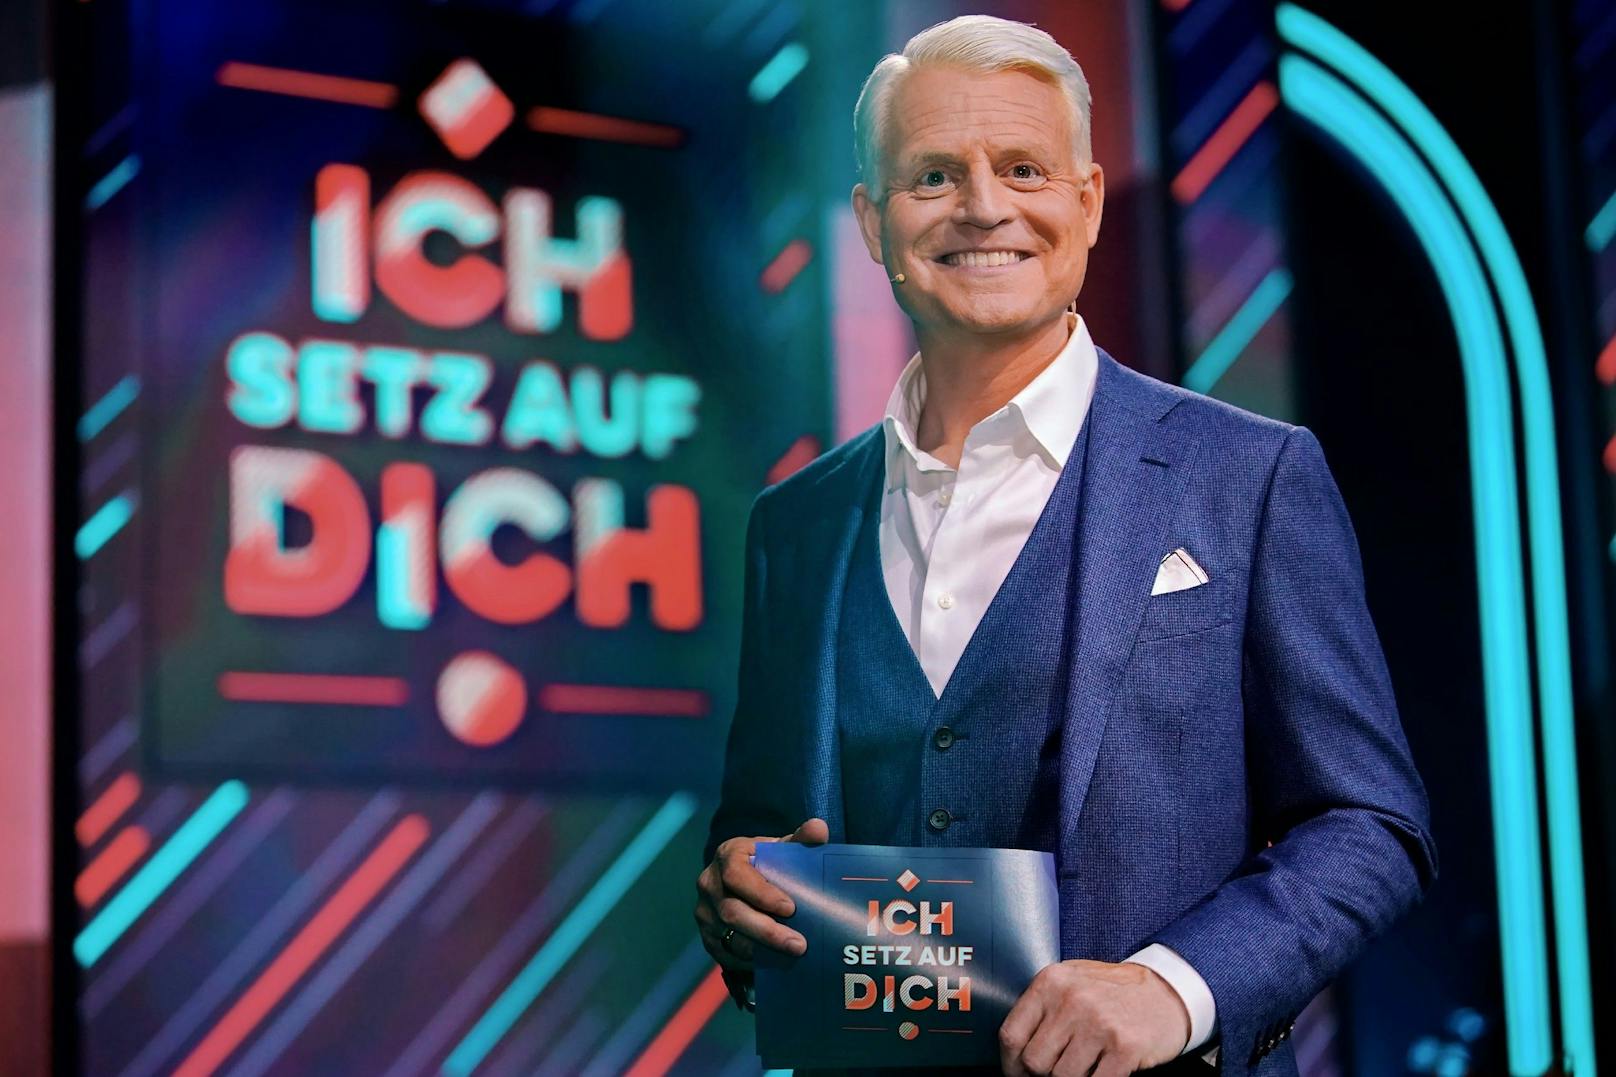 "Ich setz auf dich" wird neues "Wetten, dass" für RTL